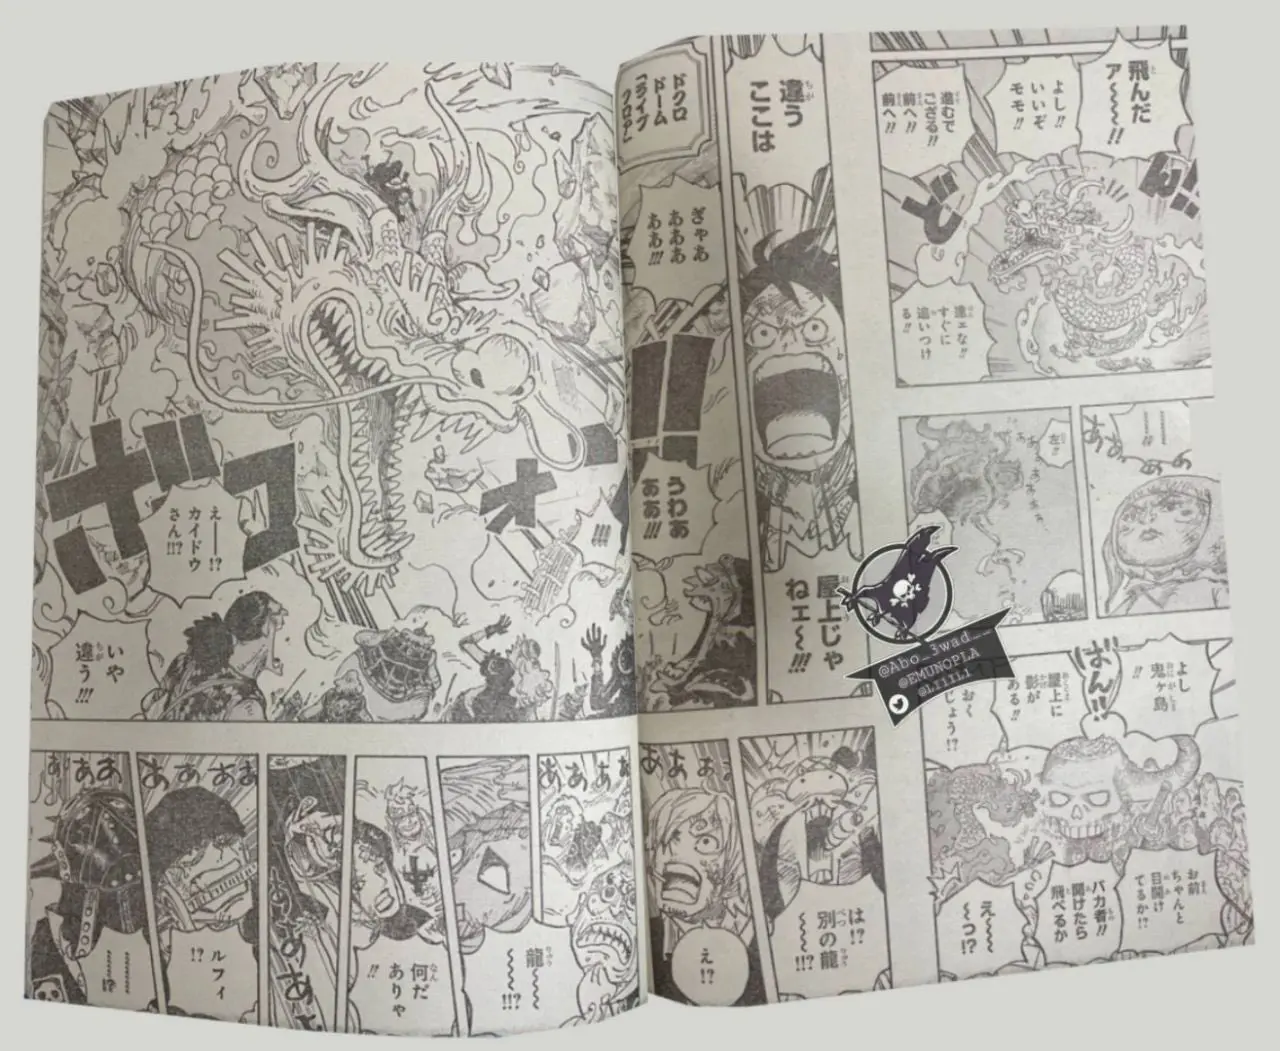 One Piece Manga 1025 Spoiler 008.jpg One Piece 1025 Spoilers: Luffy & Yamato Vs Kaido!